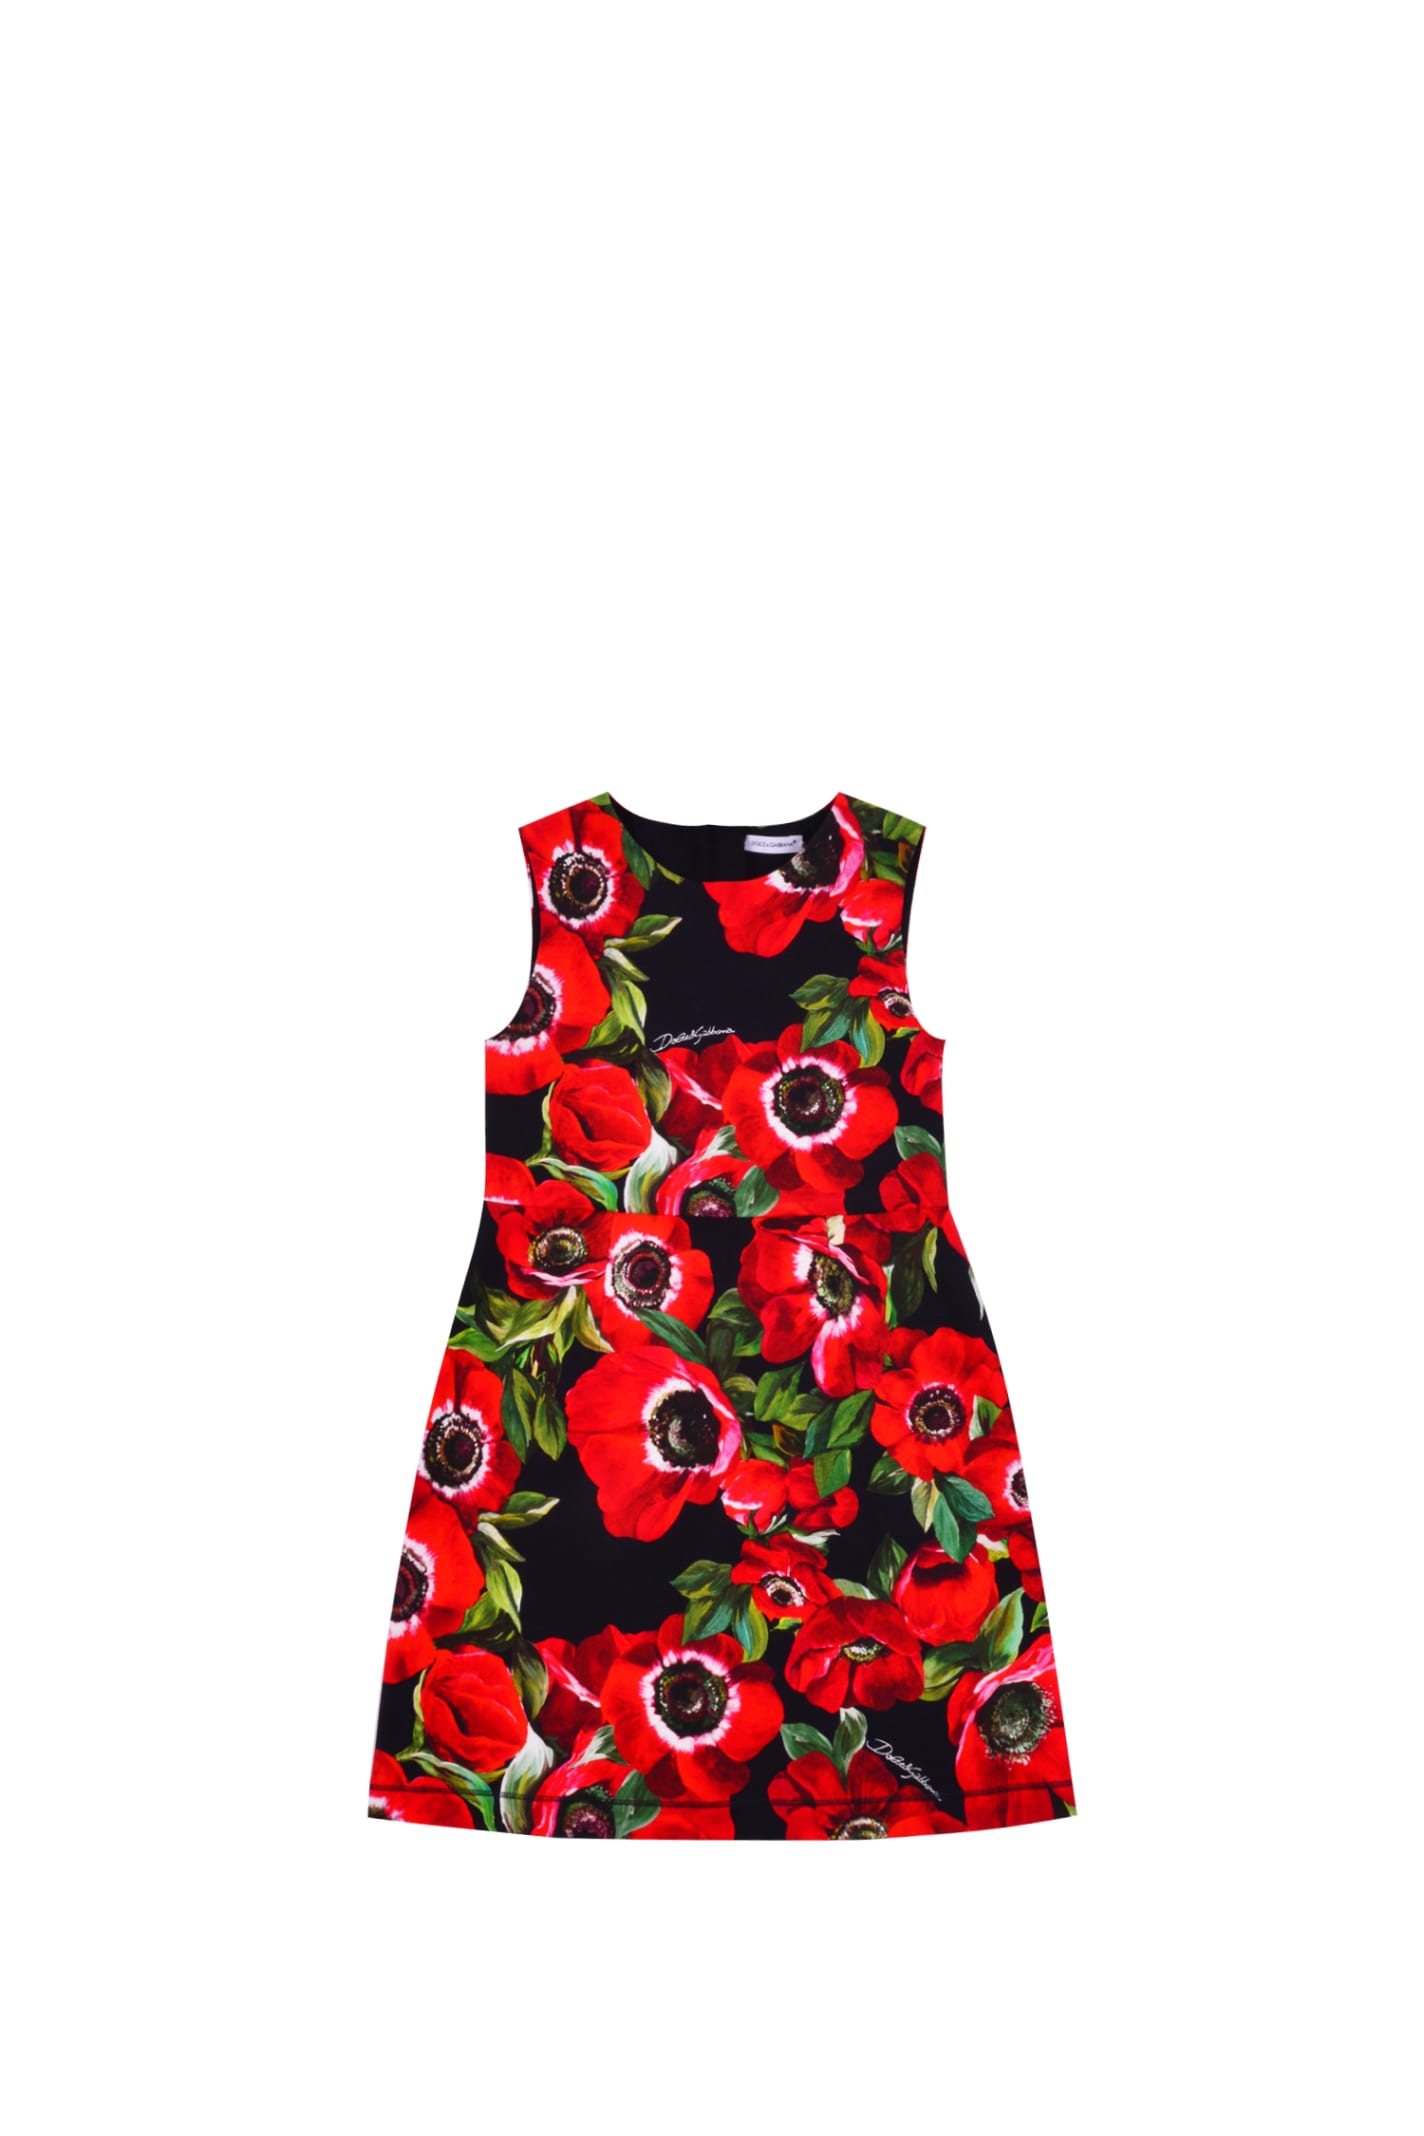 Dolce & Gabbana Flower Print Cotton Dress